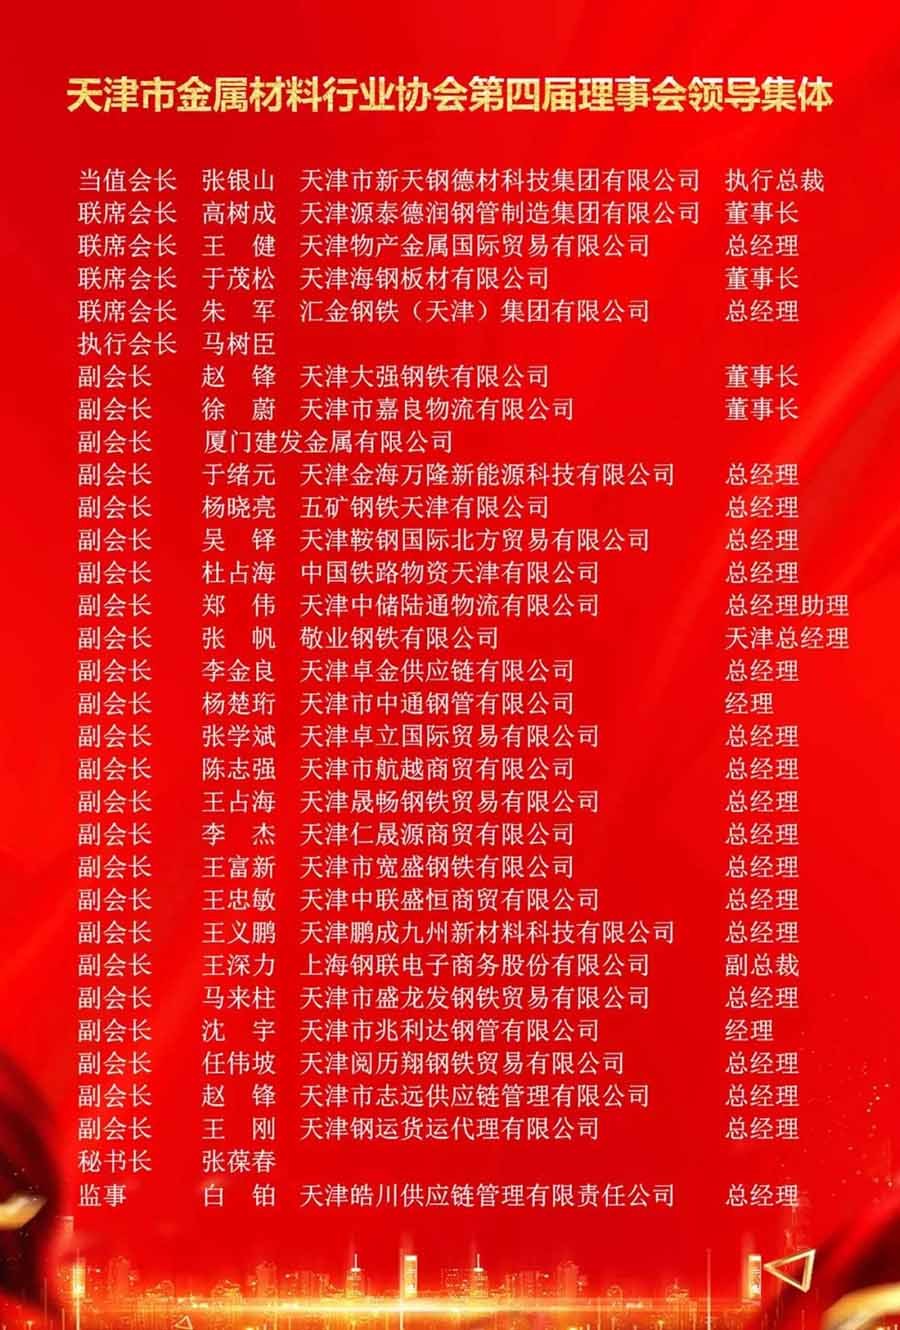 Grupo líder de la Asociación de metales de Tianjin